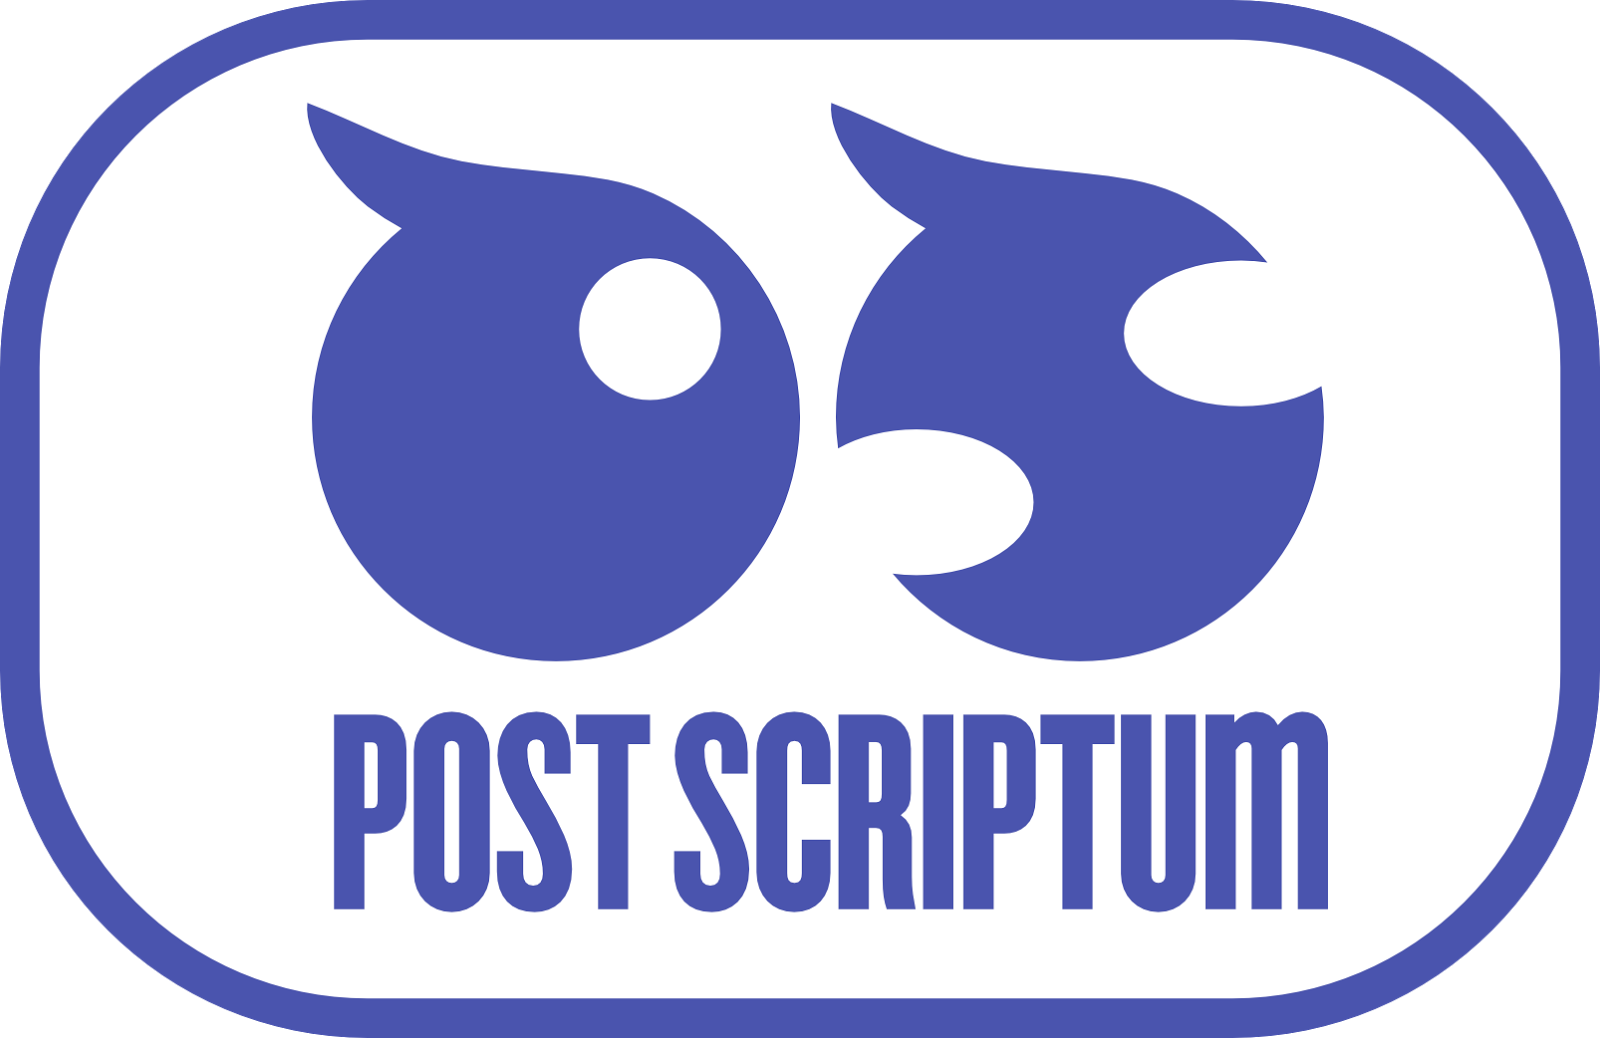 postscriptum